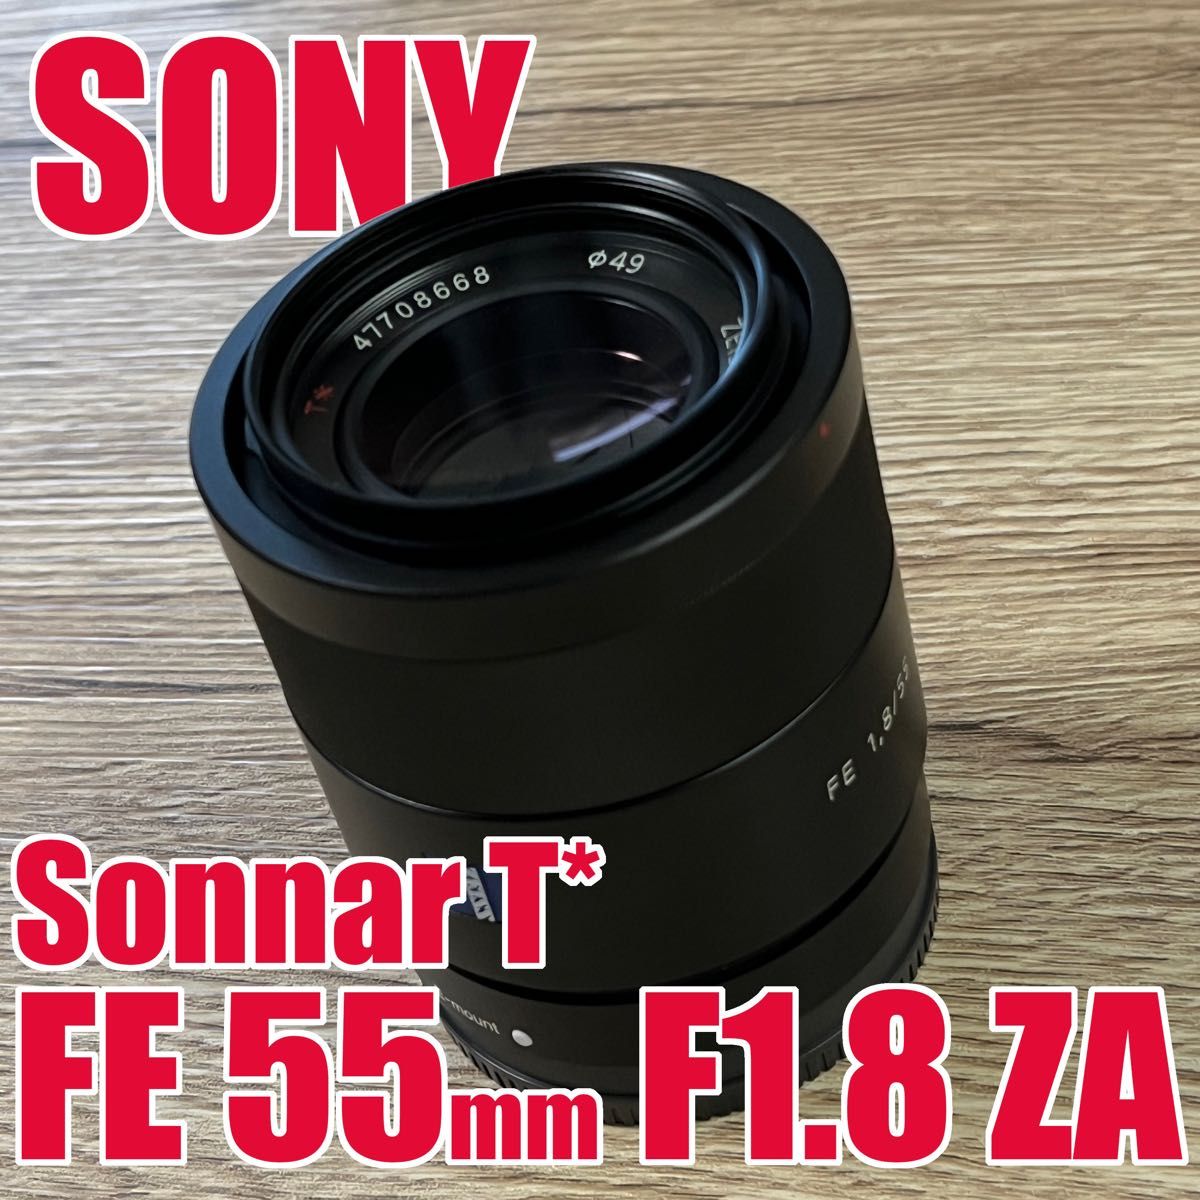 SONY Sonnar T* FE 55mm F1.8 ZA おまけつき！-